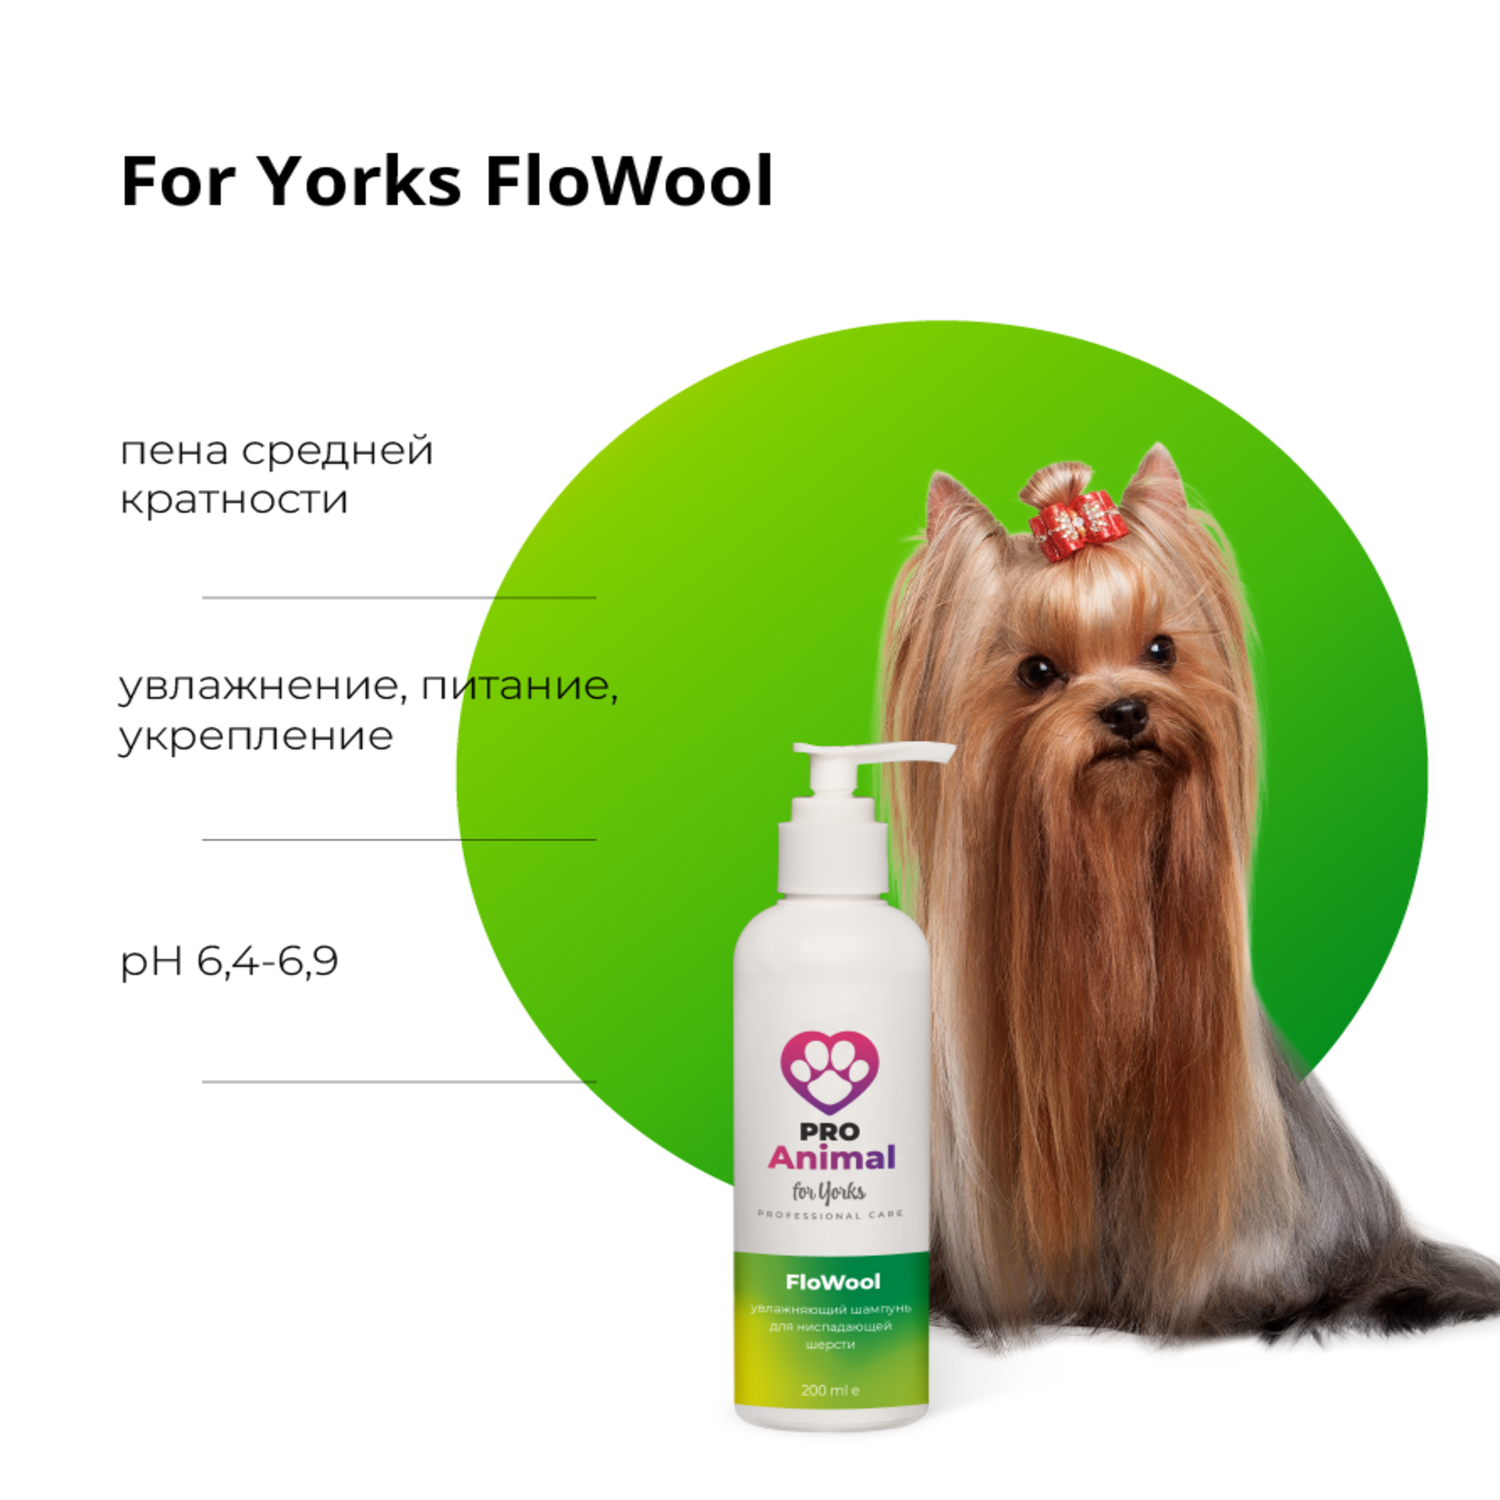 Шампунь for Yorks FloWool ProAnimal для йорков профессиональный увлажняющий для собак - фото 2